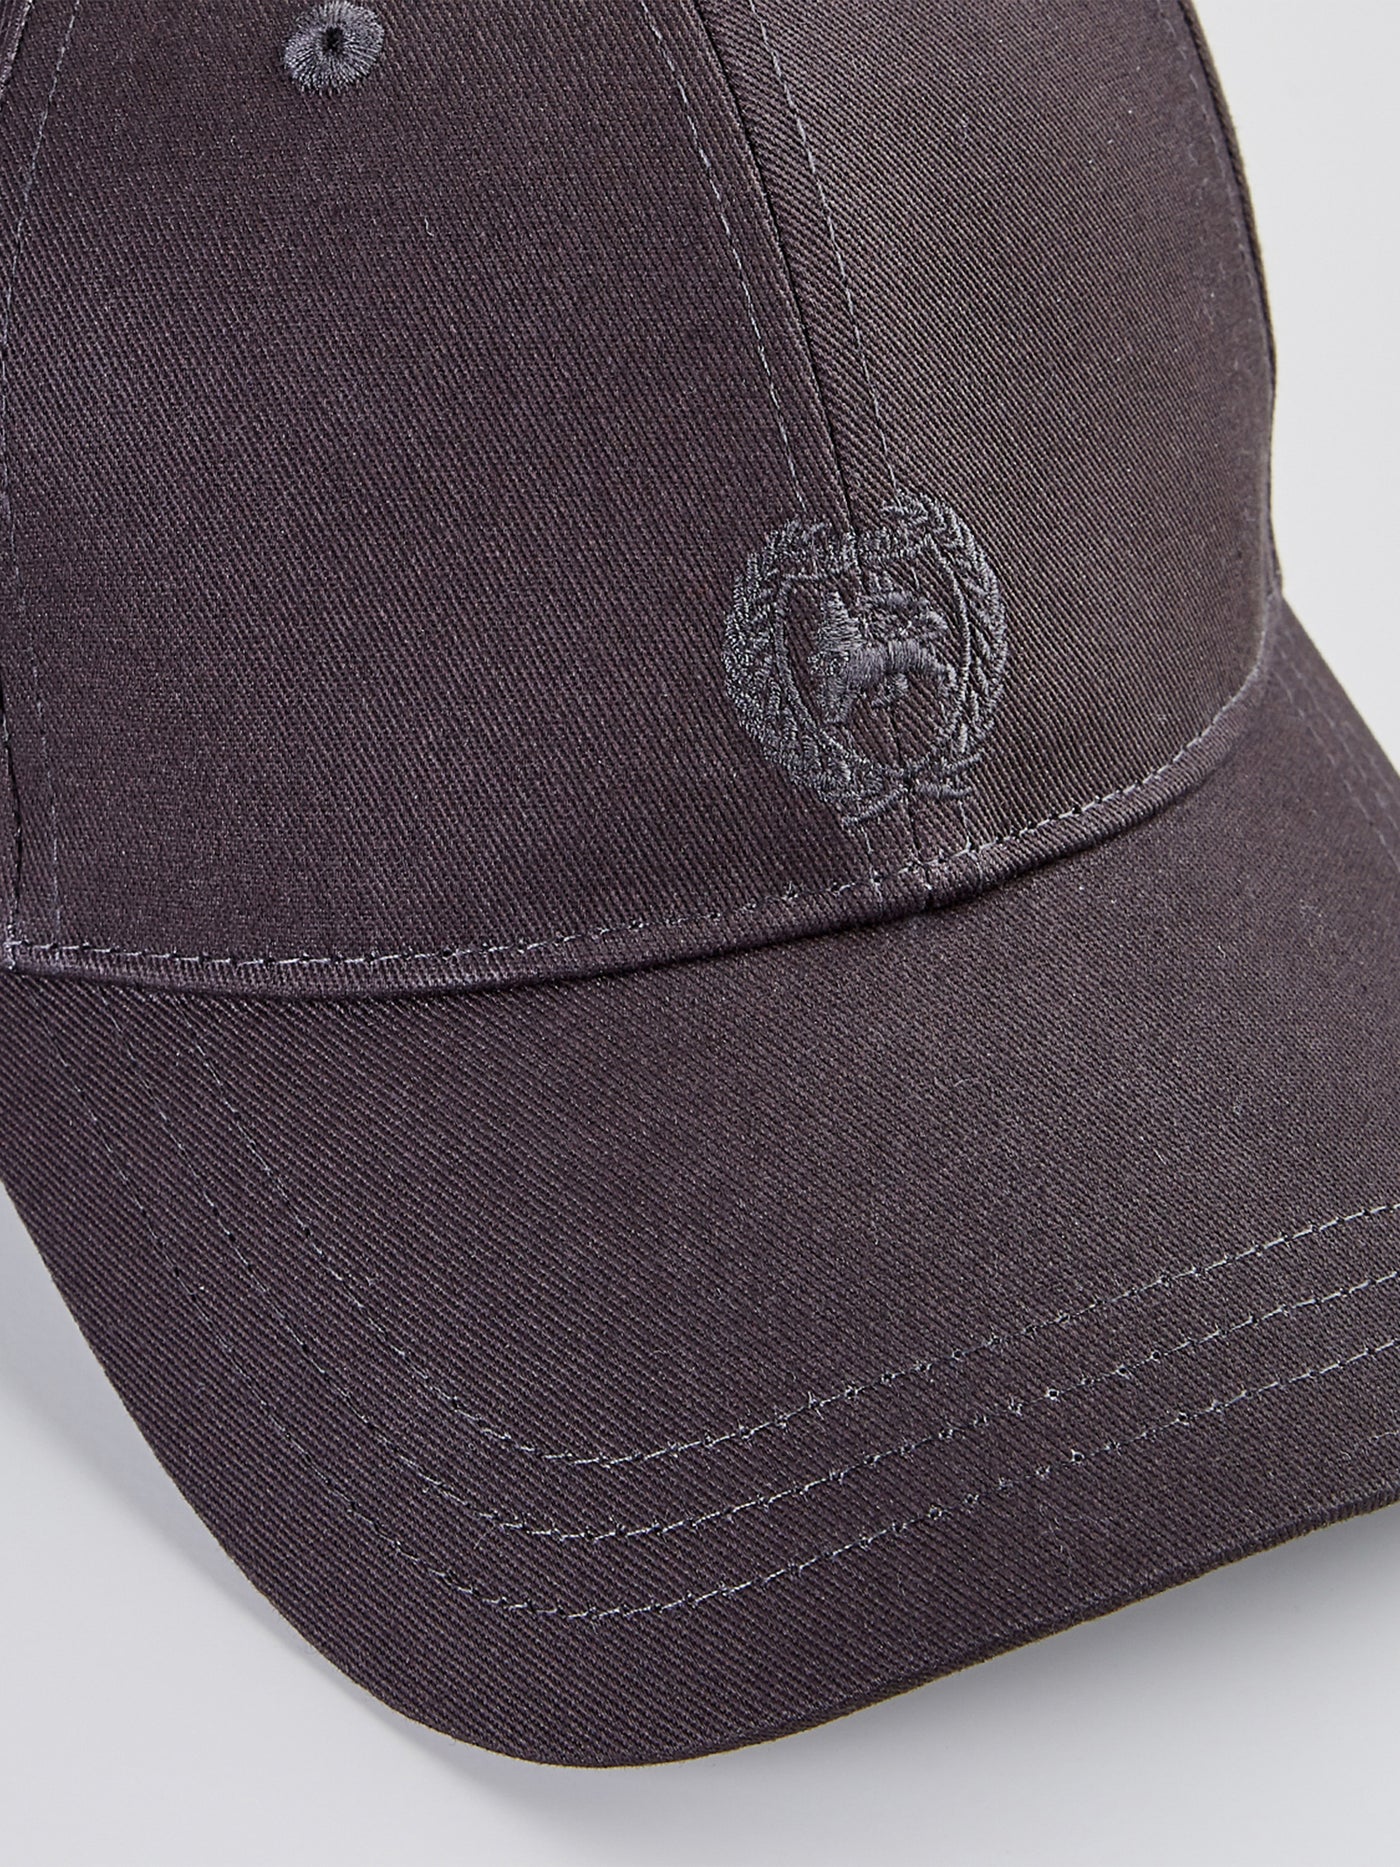 Baseball cap with logo – LERROS SHOP